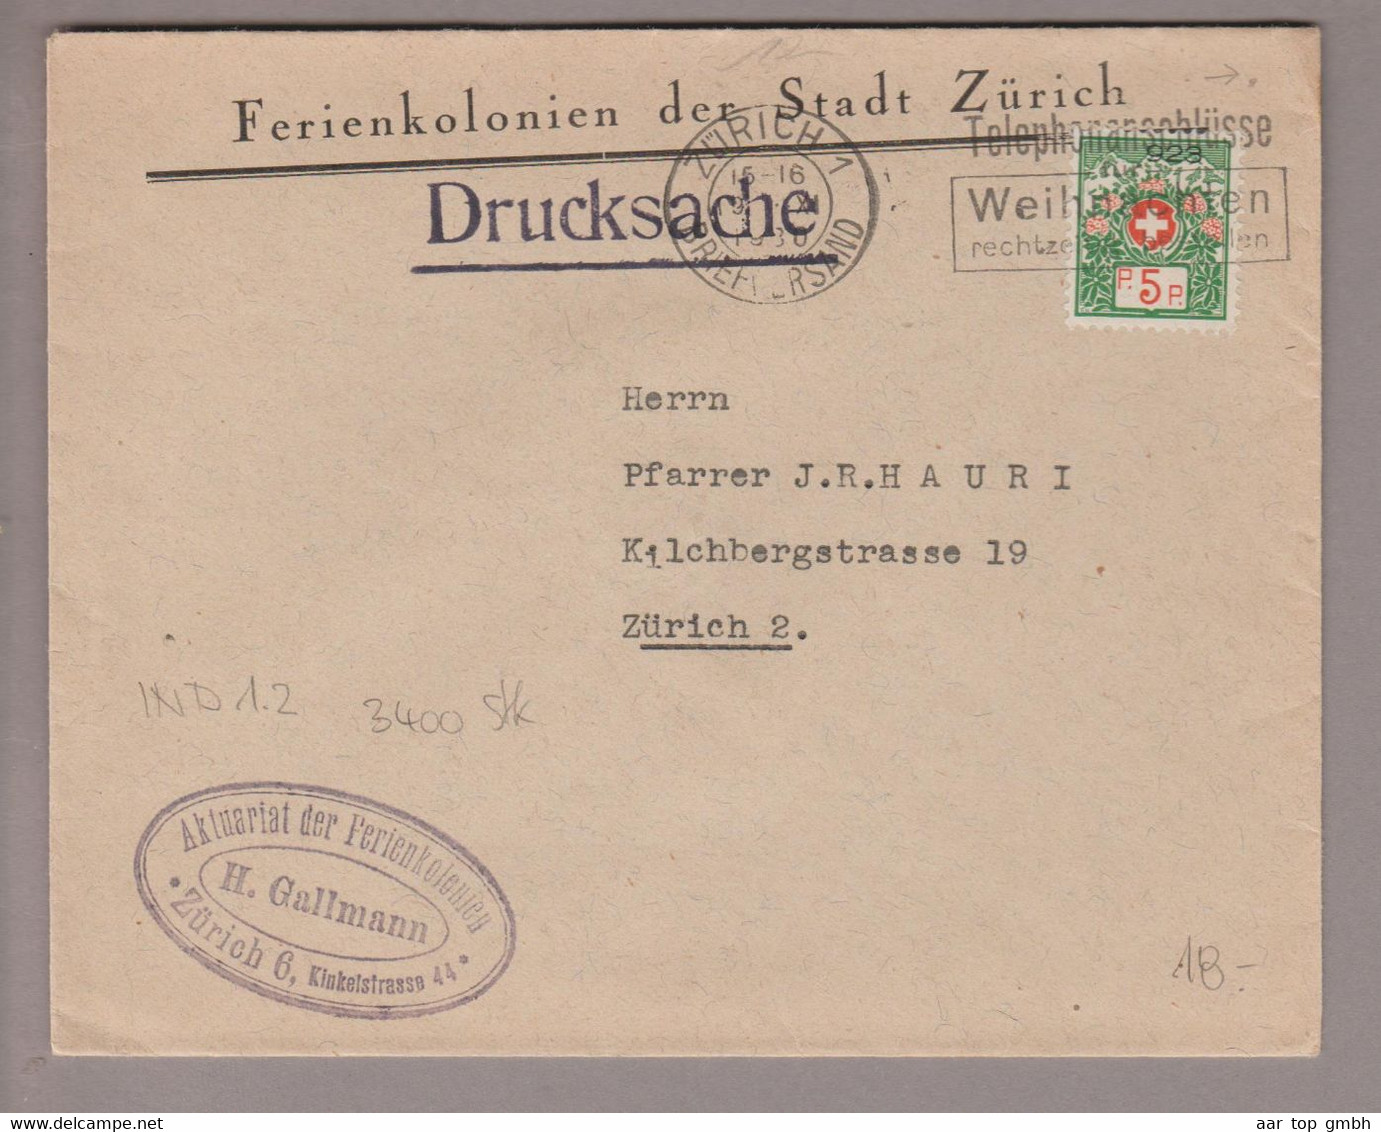 CH Portofreiheit Zu#11A 5Rp. GR#923 Brief 1930-10-19 Zürich Ferienkolonien Der Stadt Zürich - Vrijstelling Van Portkosten